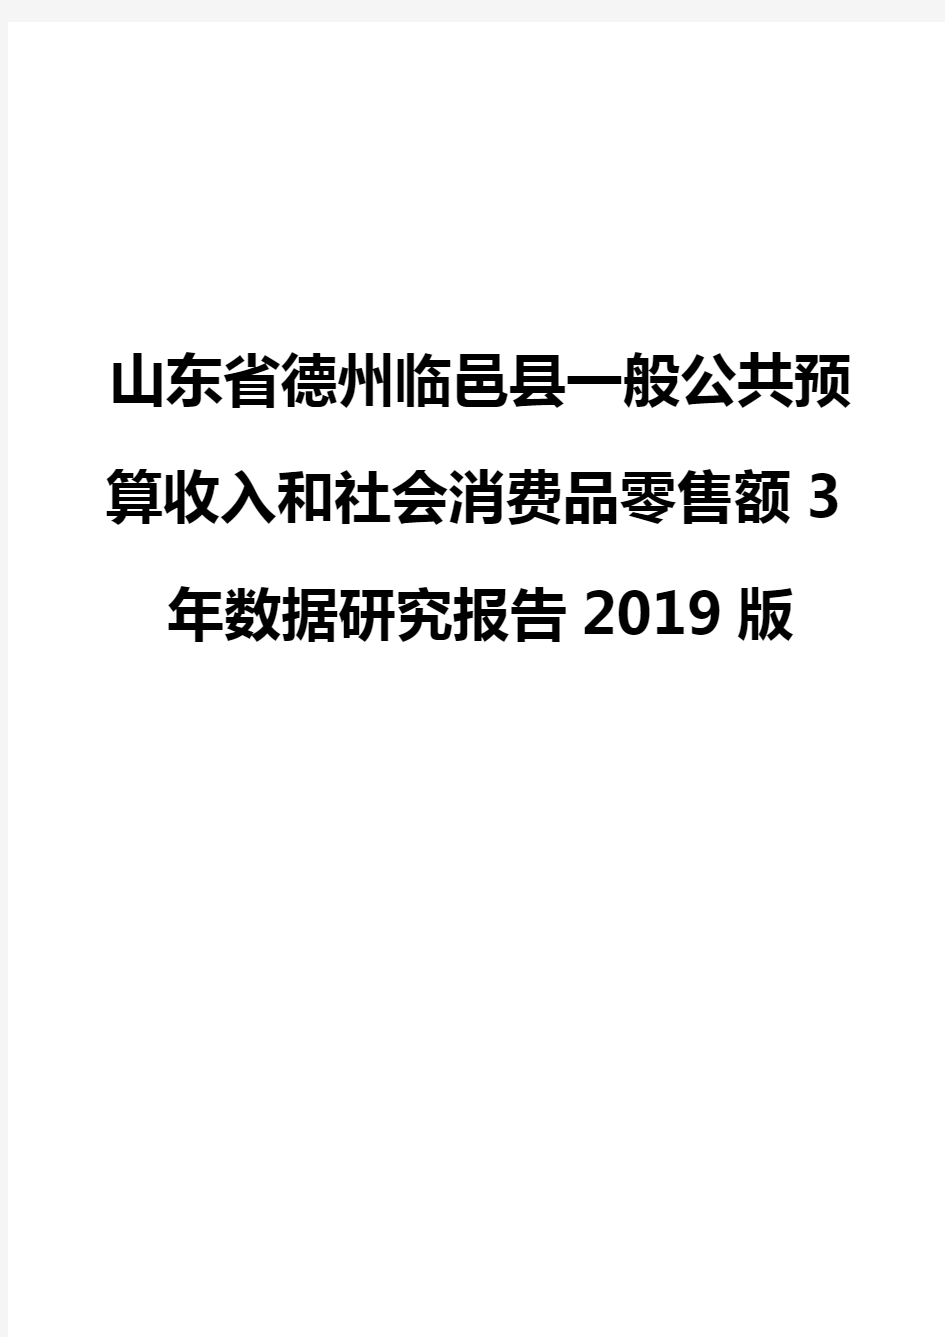 山东省德州临邑县一般公共预算收入和社会消费品零售额3年数据研究报告2019版